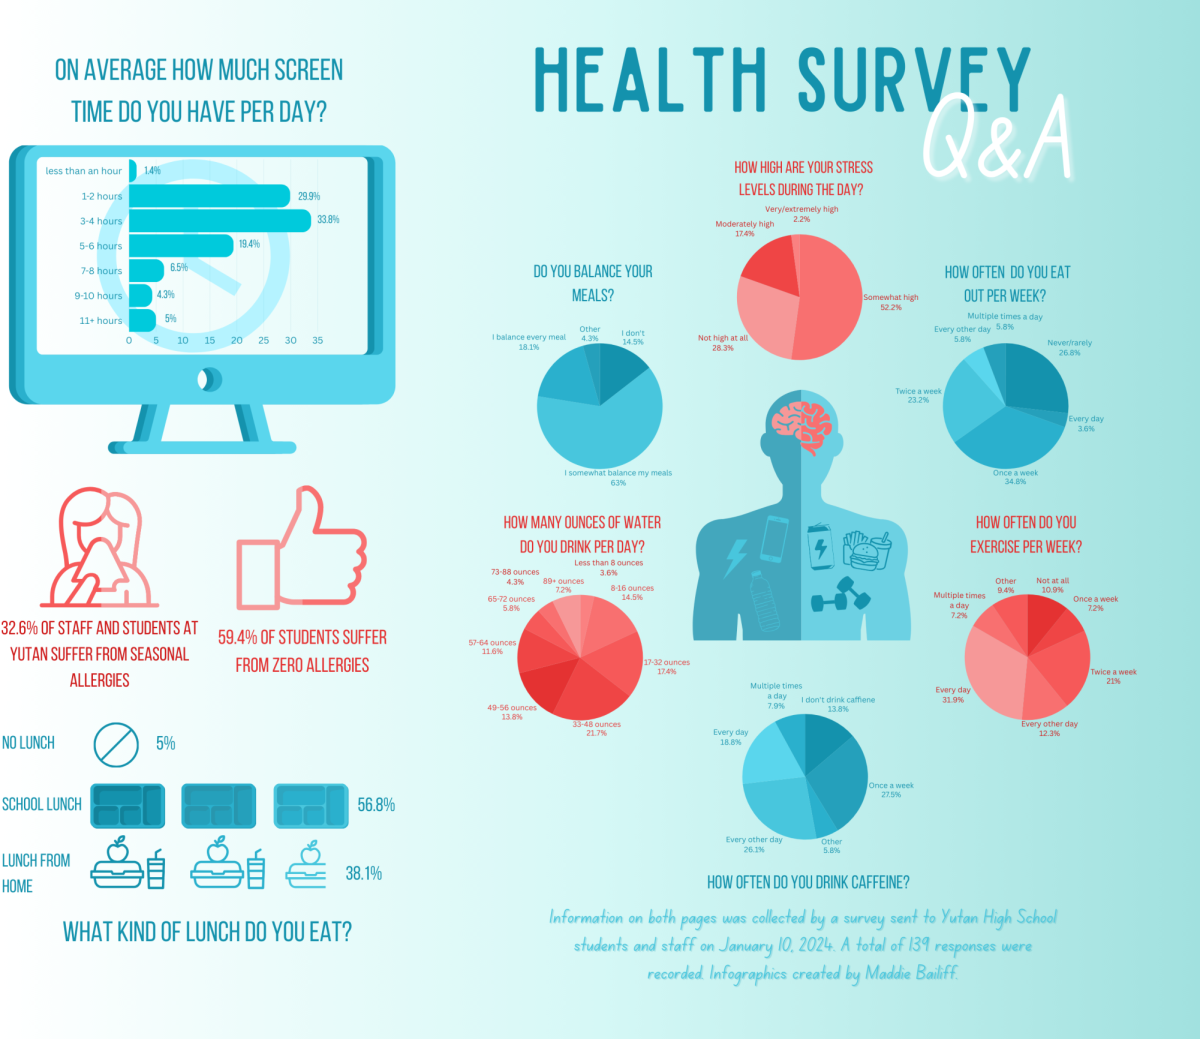 Health survey Q&A